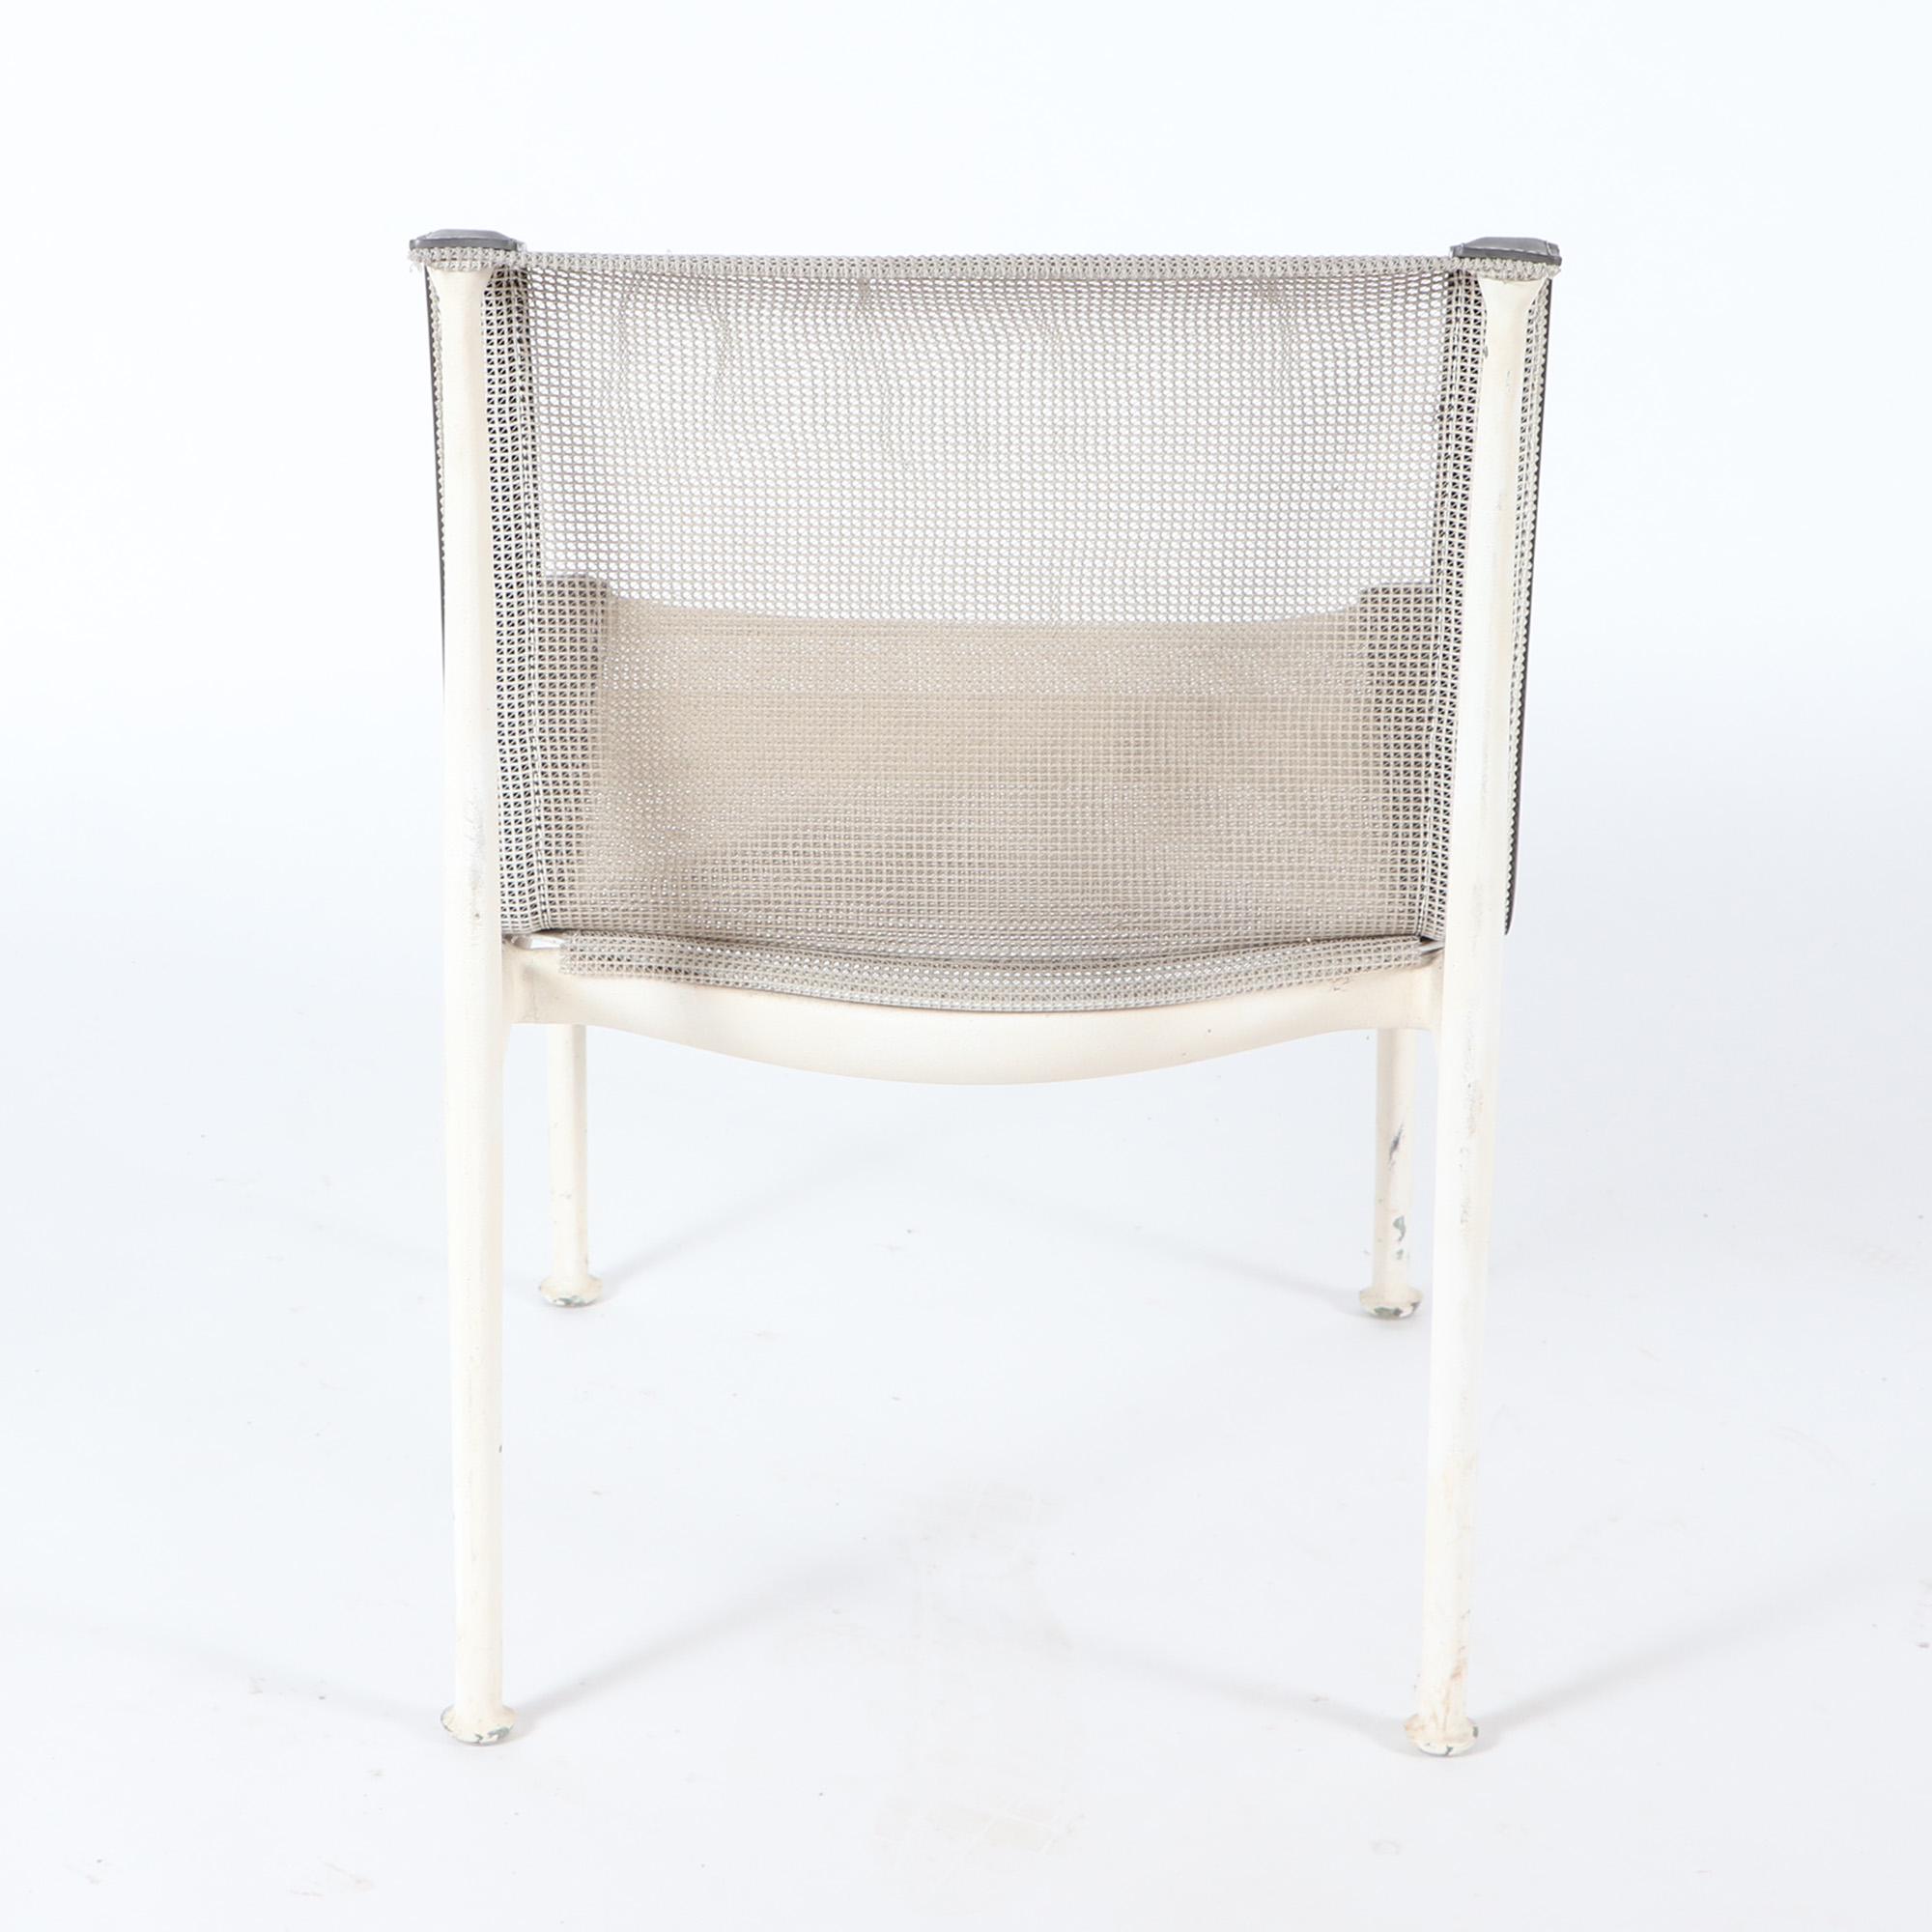 Aluminum Richard Schultz a Set of Four Garden Chairs for Knoll